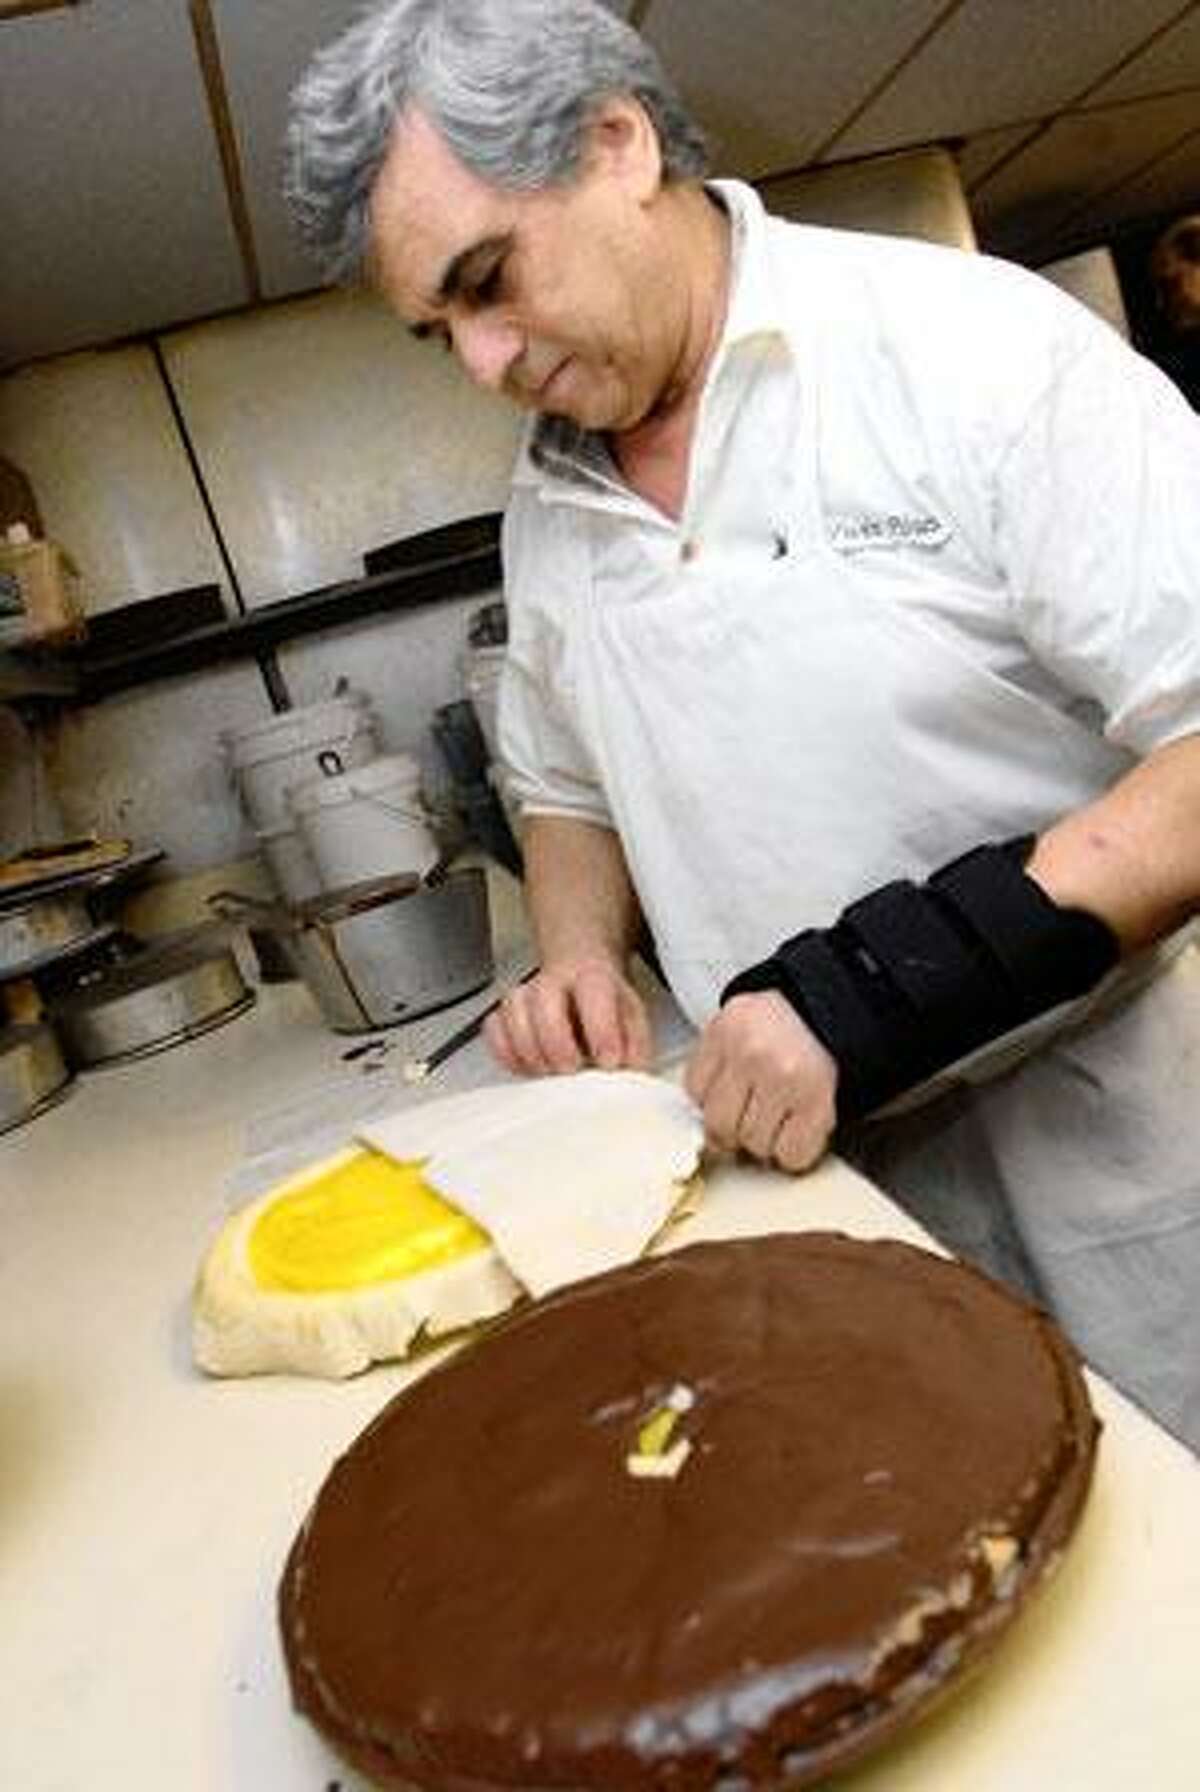 Mike Polsakis of Twin Pines Diner in East Haven prepares Lemon Chocolate Pie. (Brad Horrigan/Register)